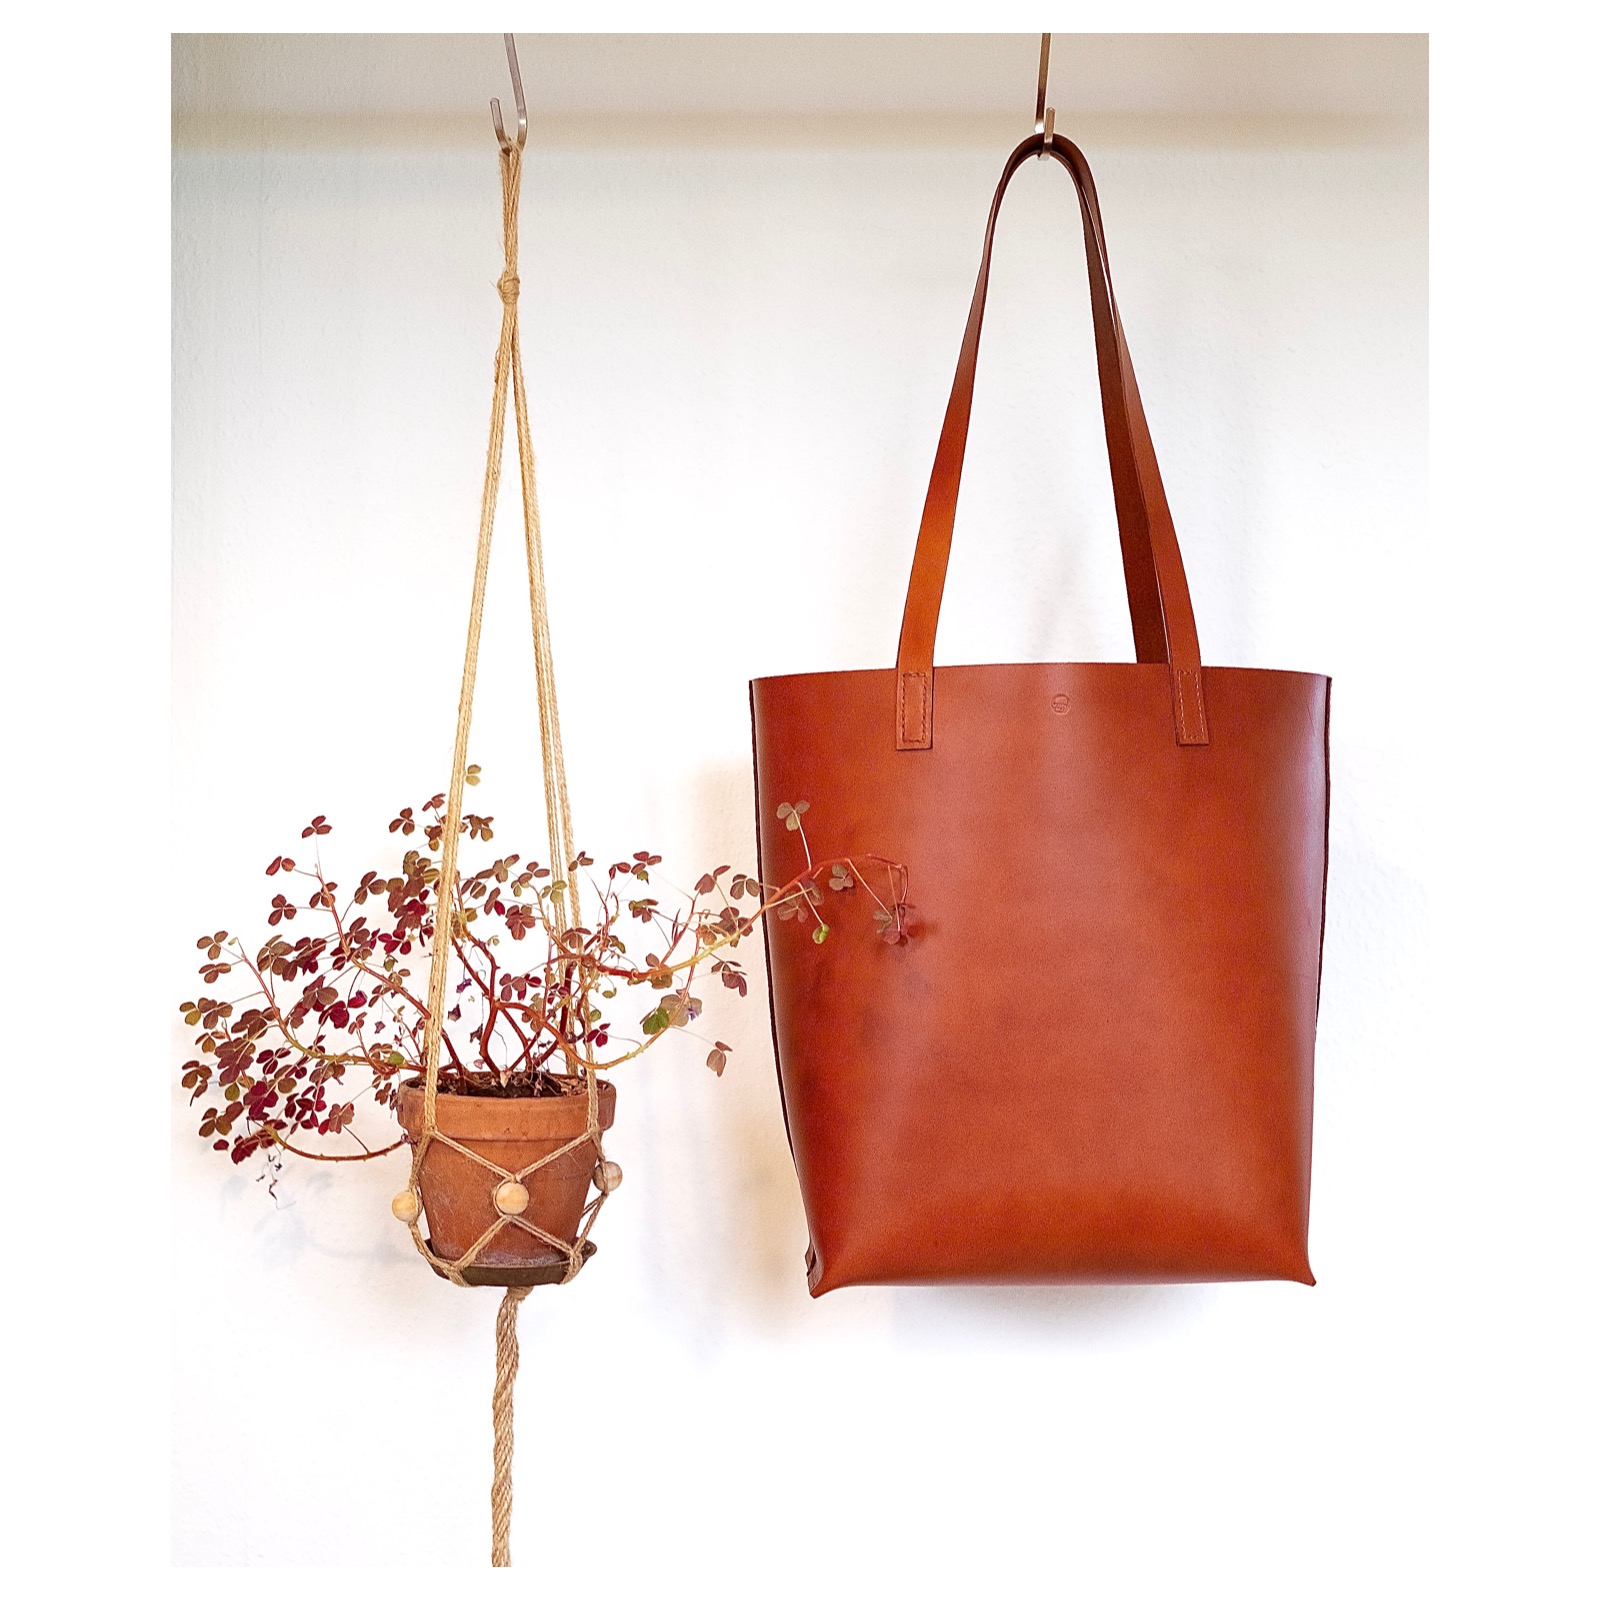 bronze Tal højt sagging Shopper taske i cognac farvet kernelæder | Smuk, stilren og tidsløs